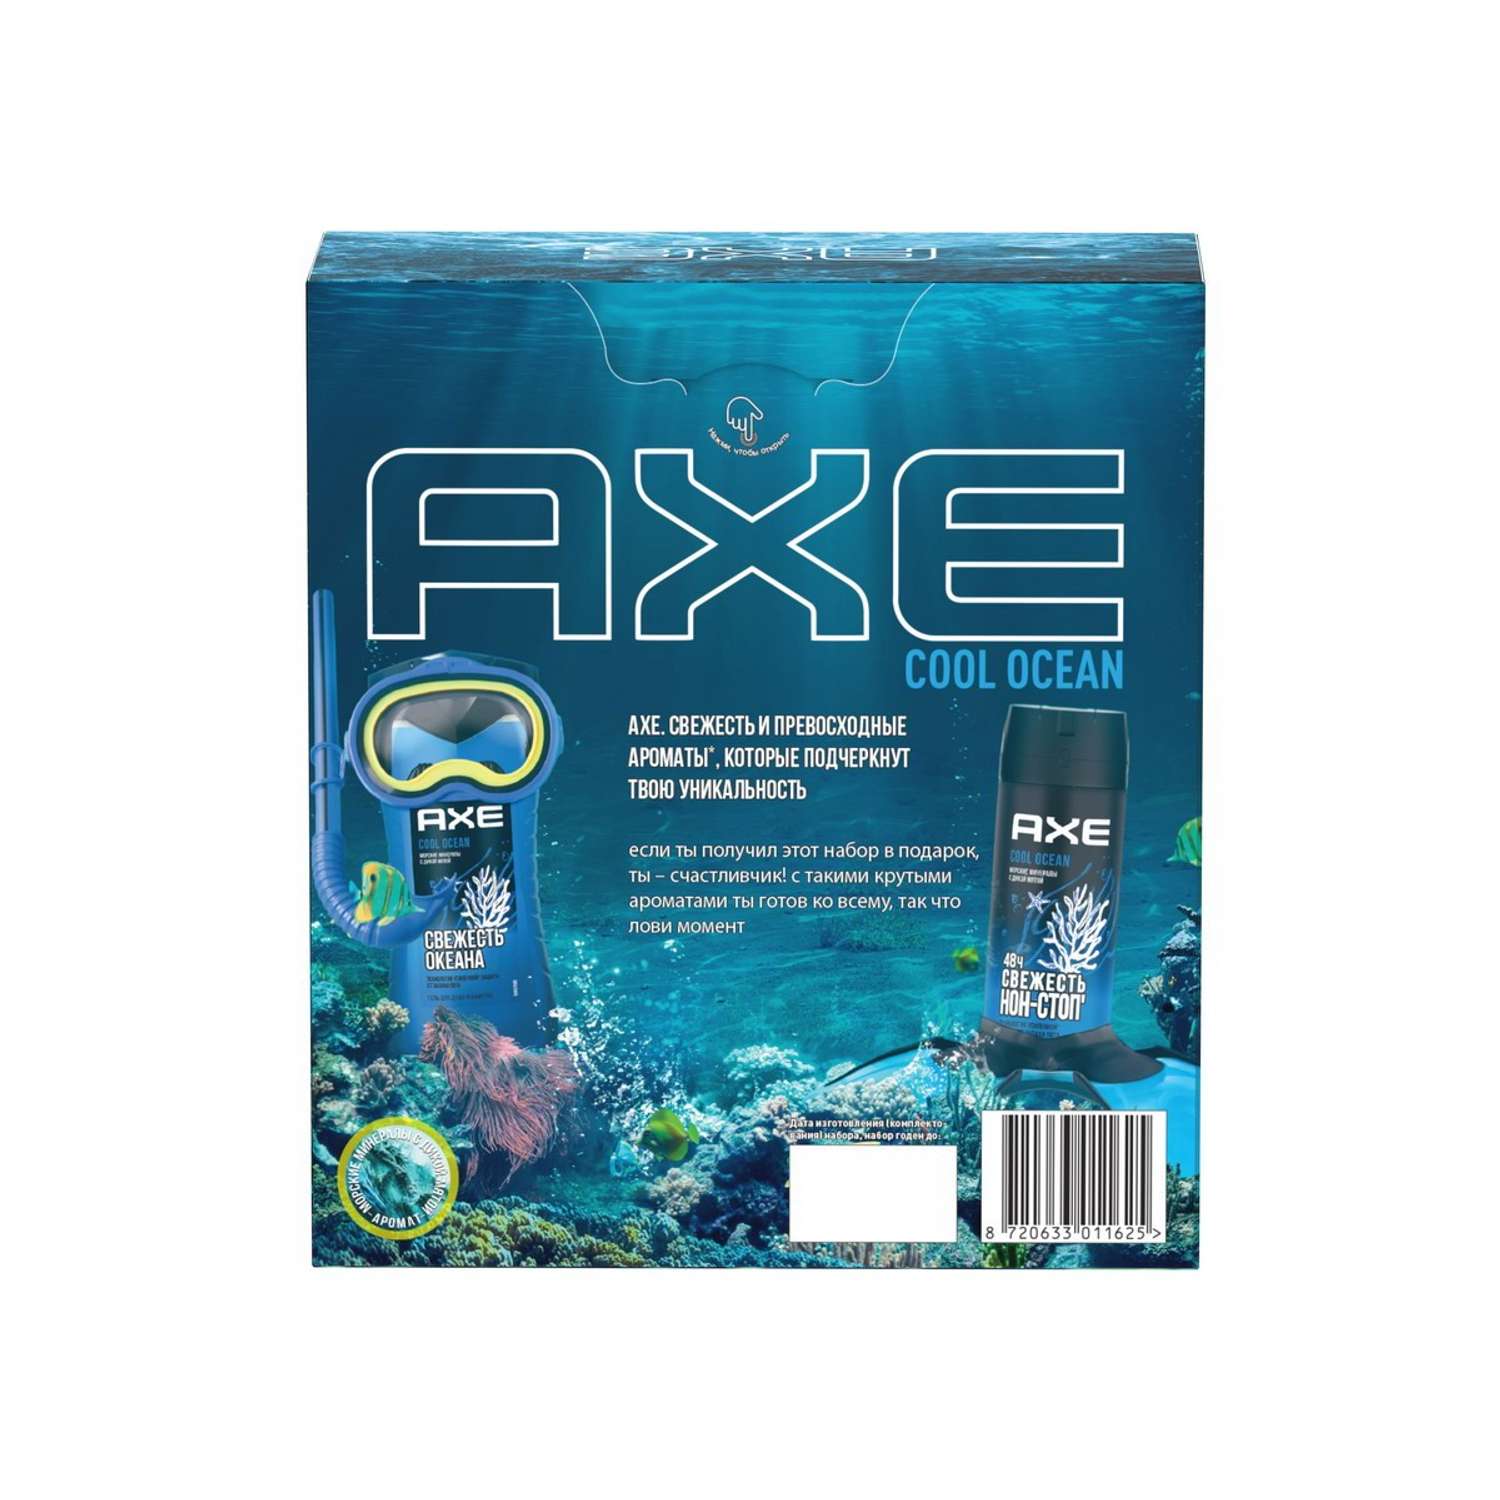 Подарочный набор Axe Cool Ocean гель для душа и дезодорант - фото 2